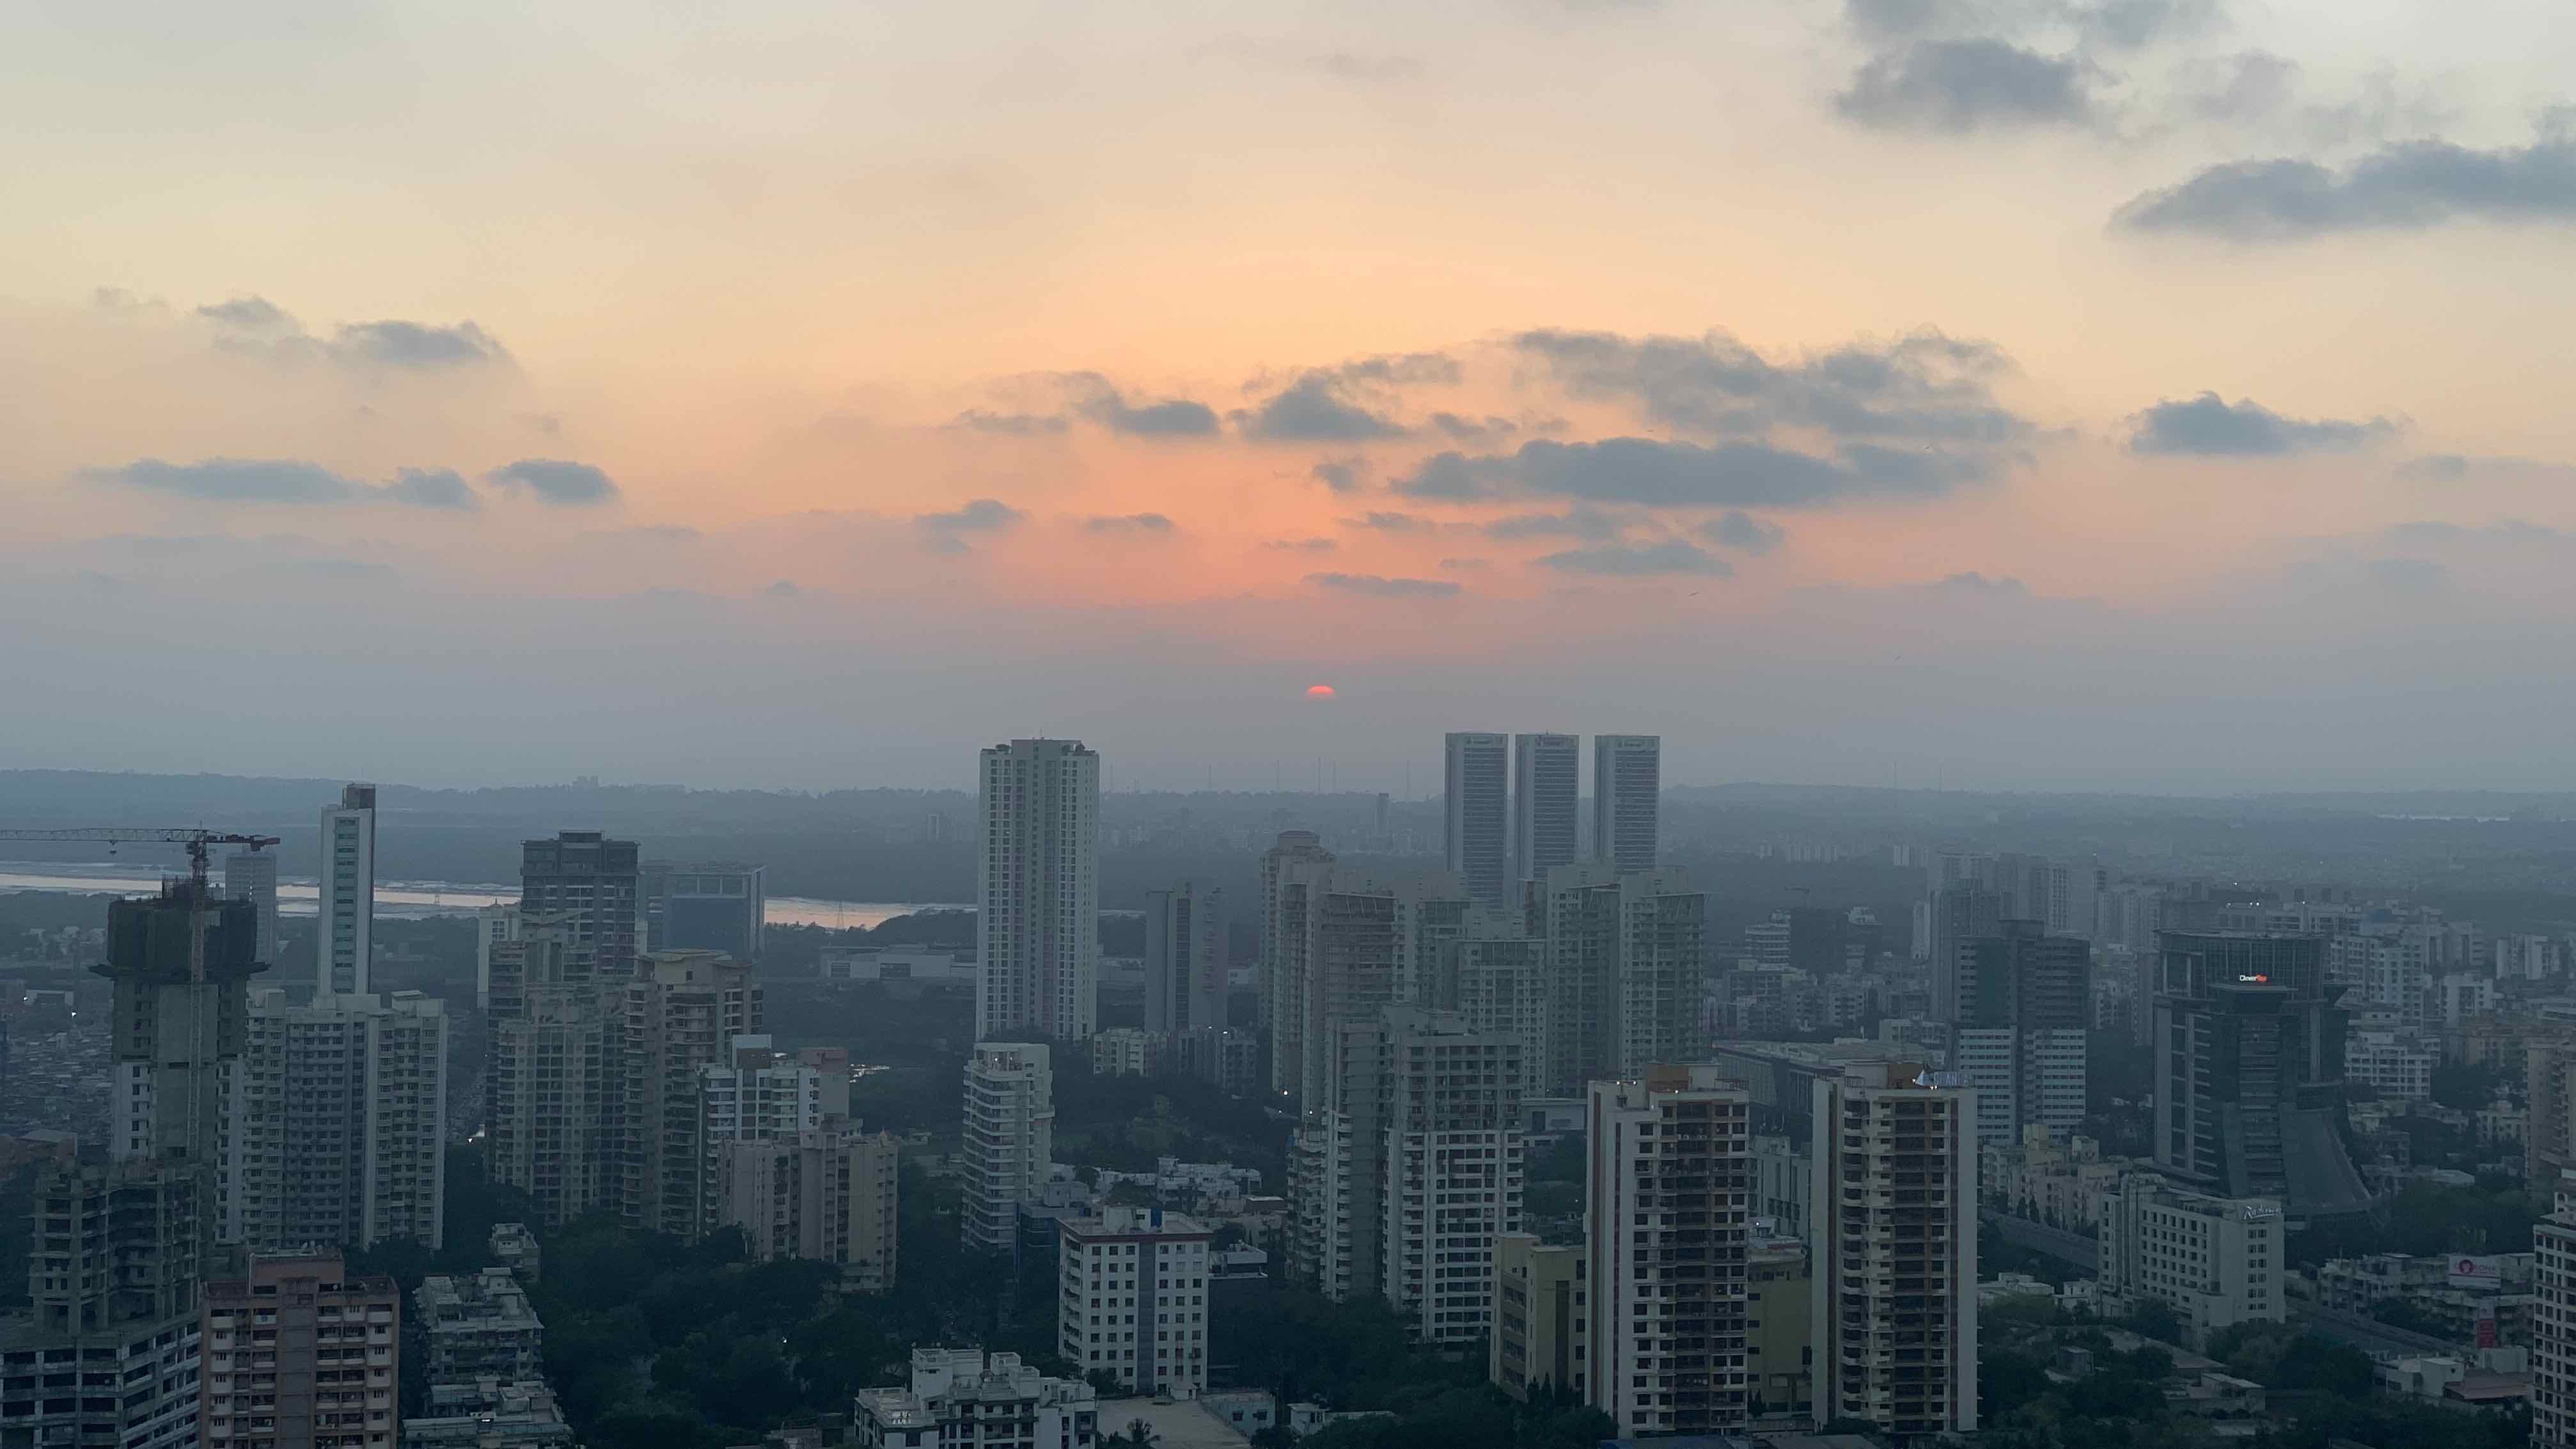 Mumbai Sunset